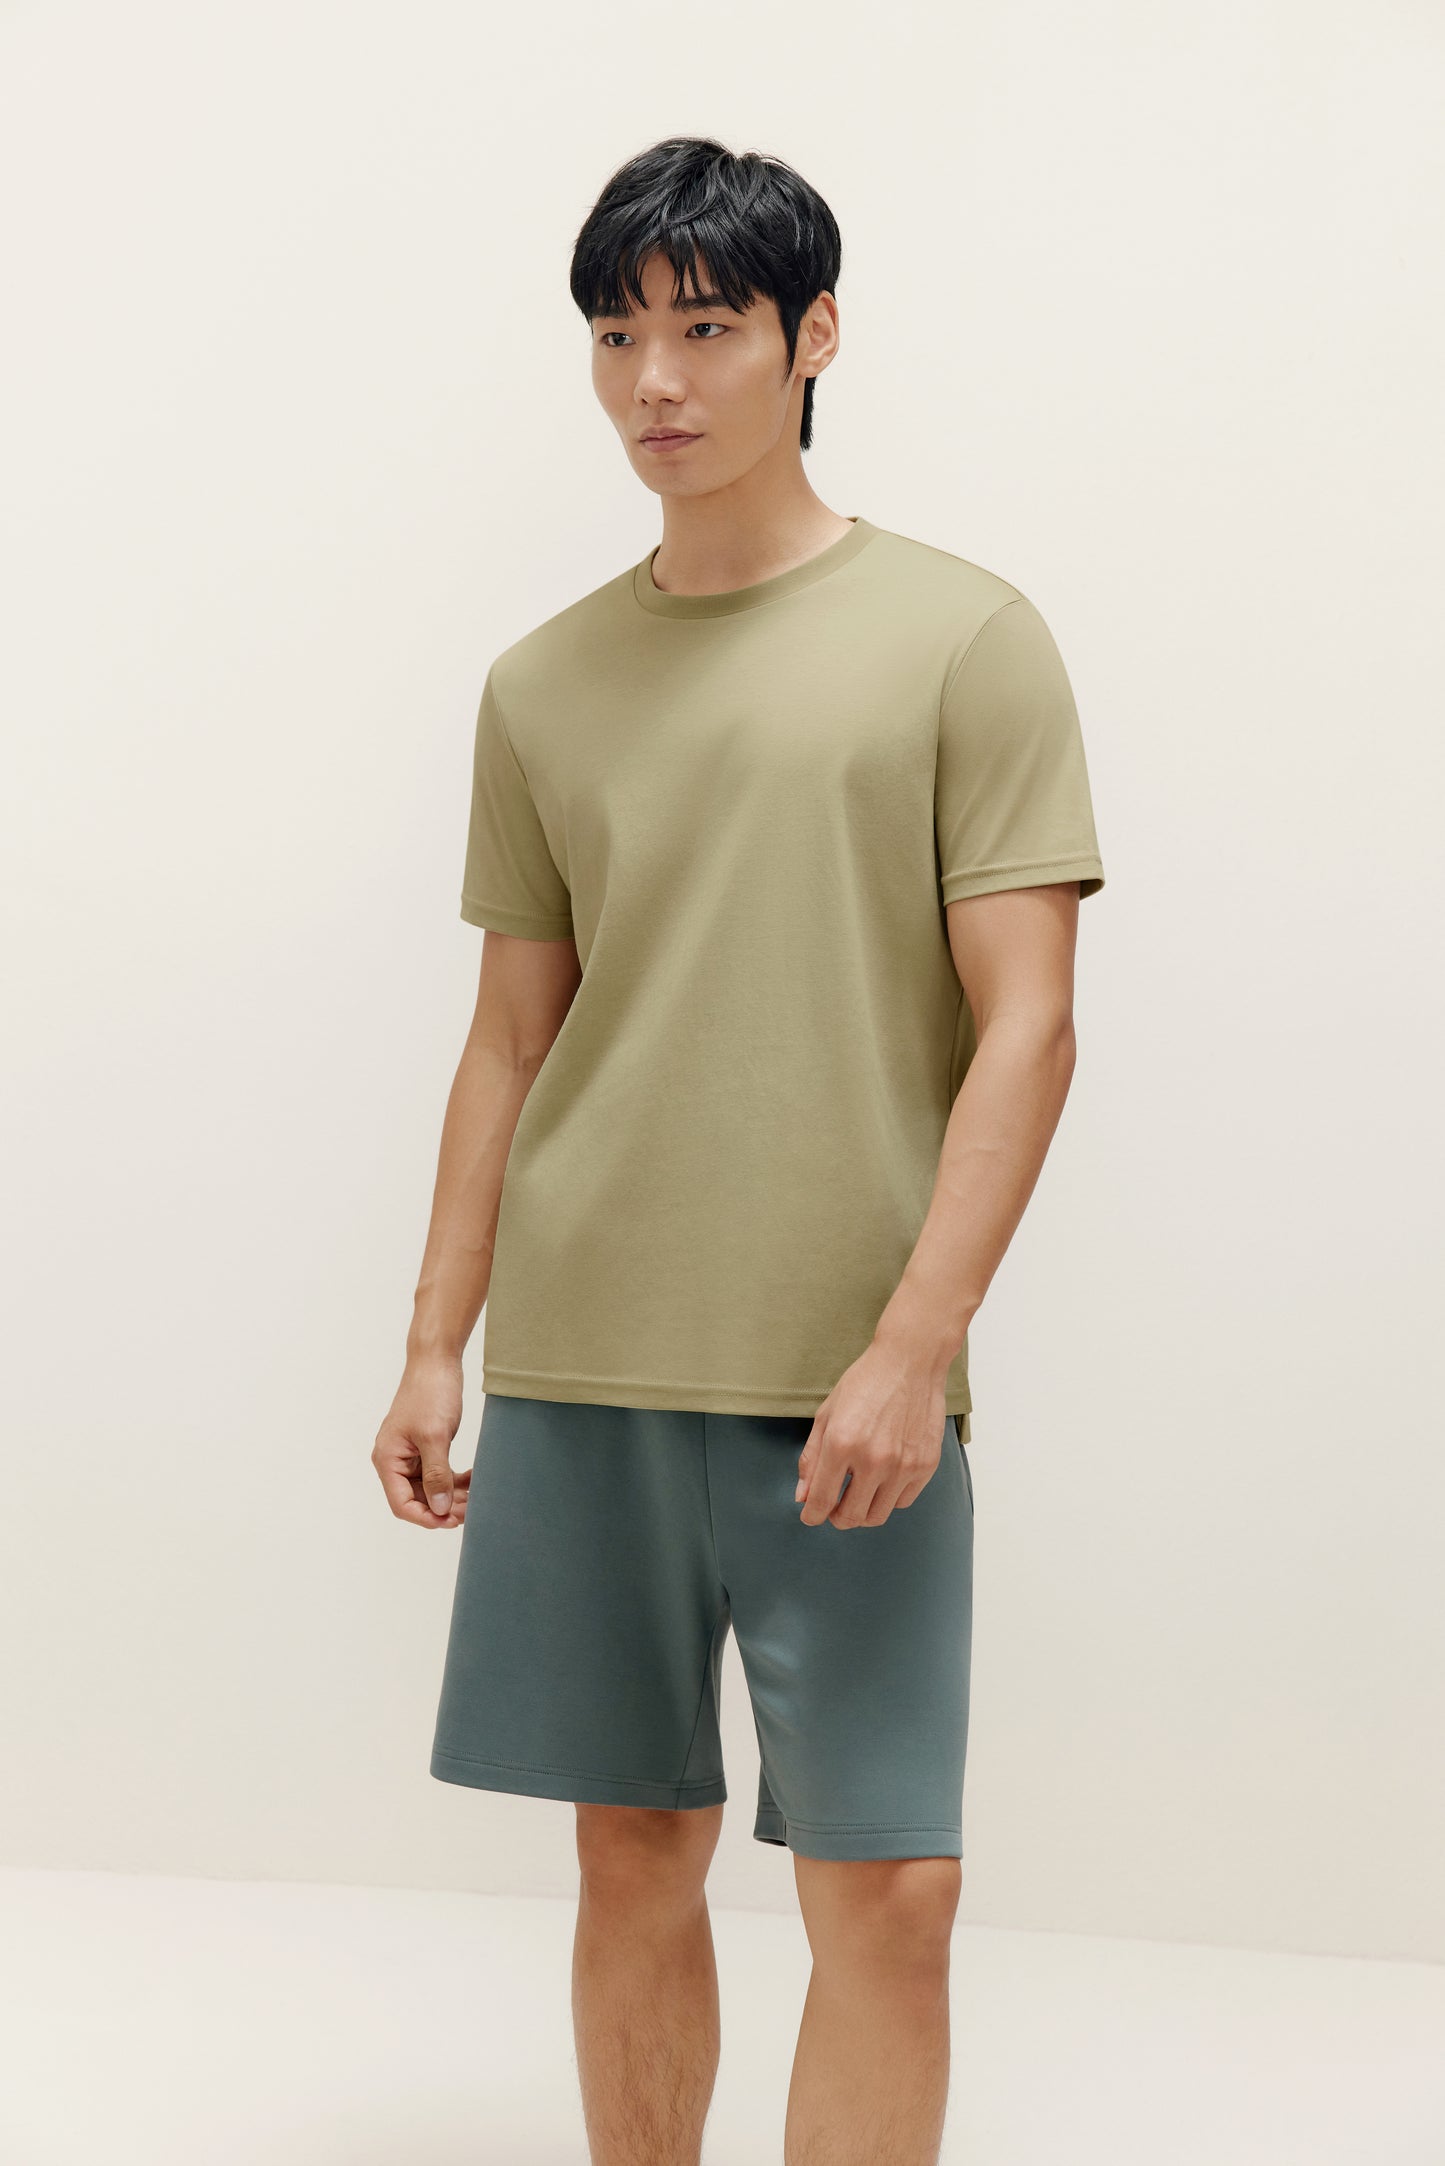 Men's Basic Short Sleeved T-Shirt